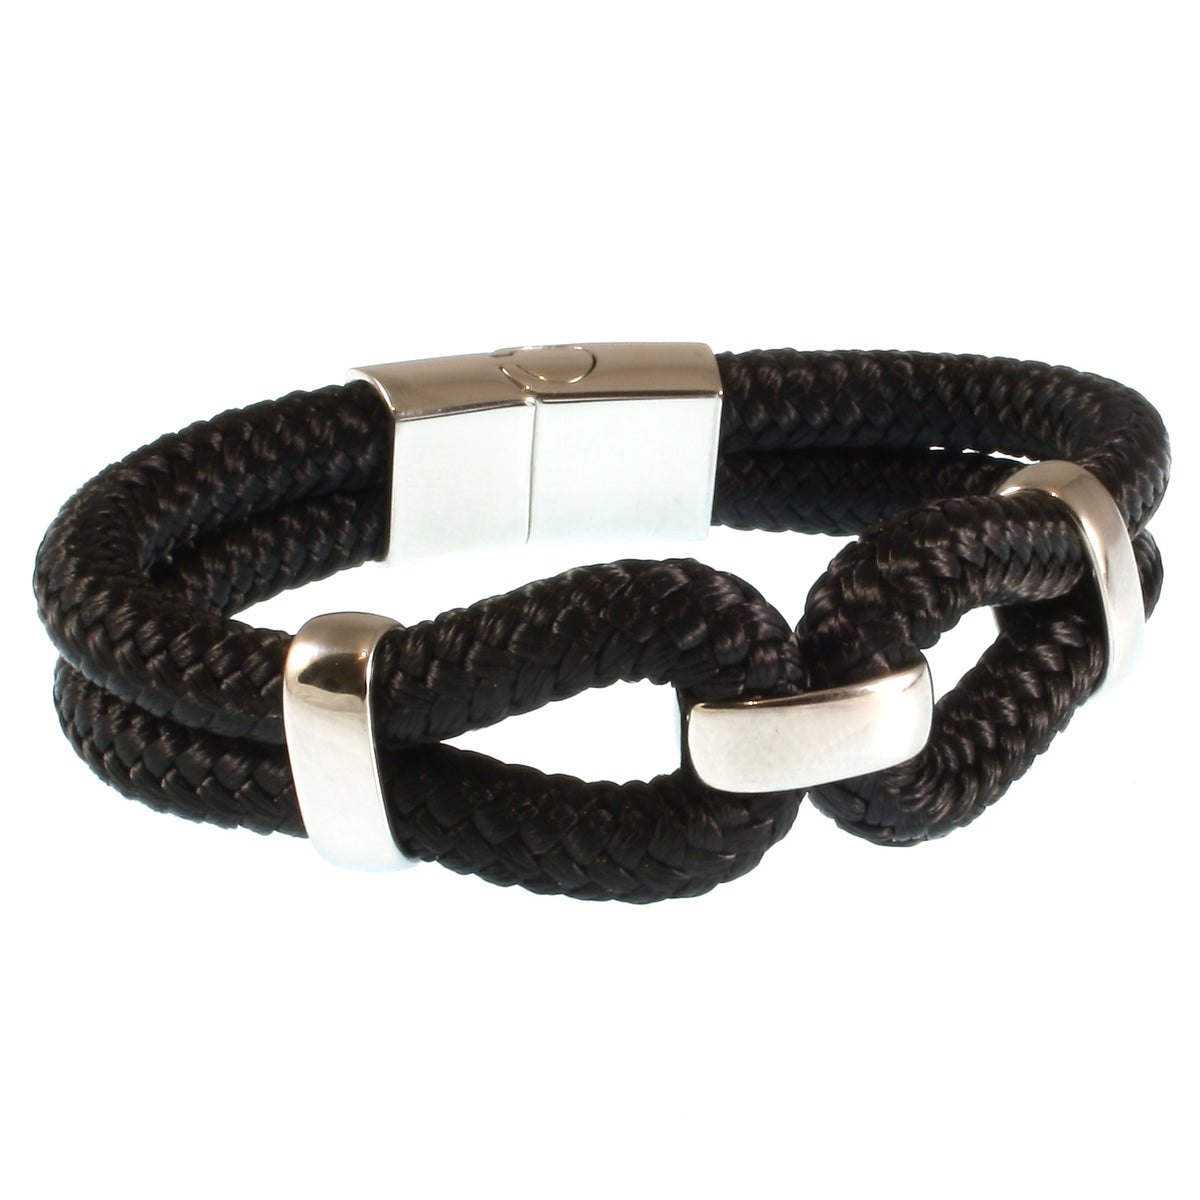 Damen-Segeltau-armband-roma-schwarz-geflochten-Edelstahlverschluss-hinten-wavepirate-shop-st